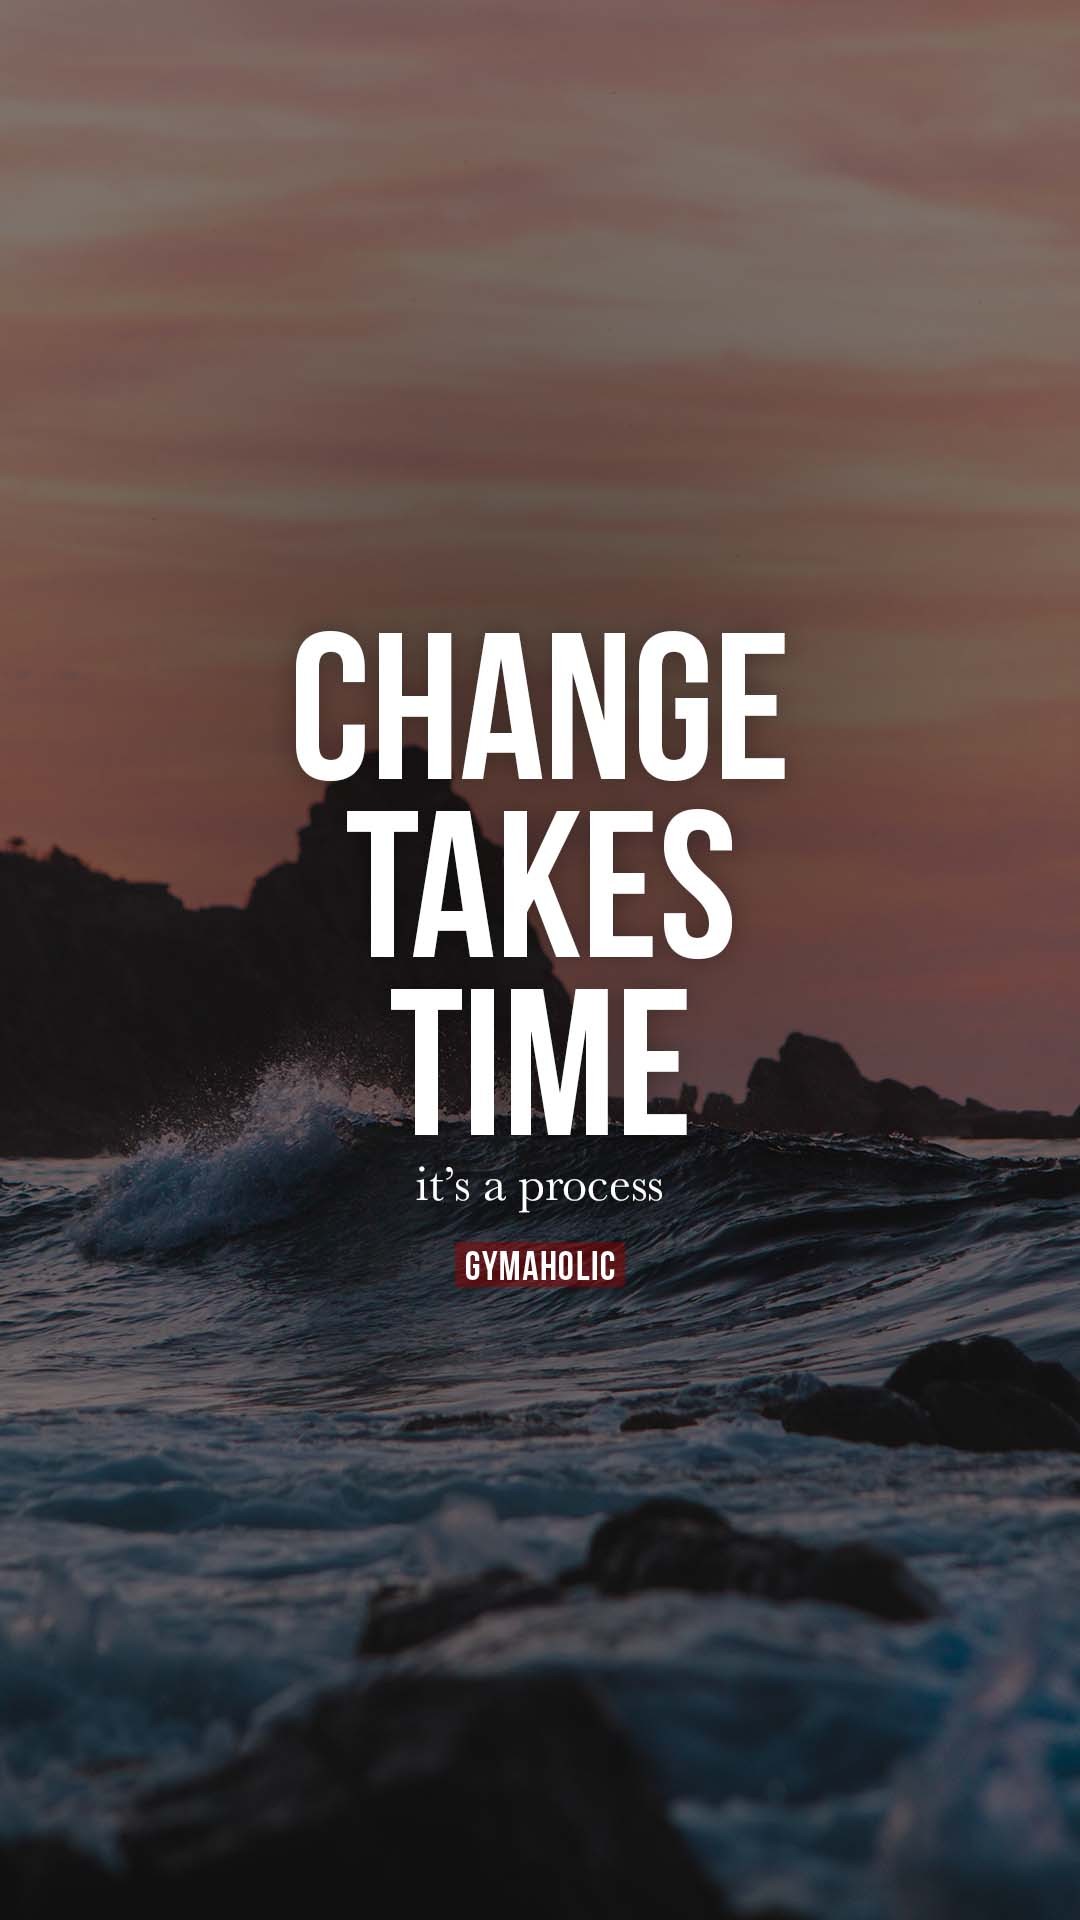 Change takes time